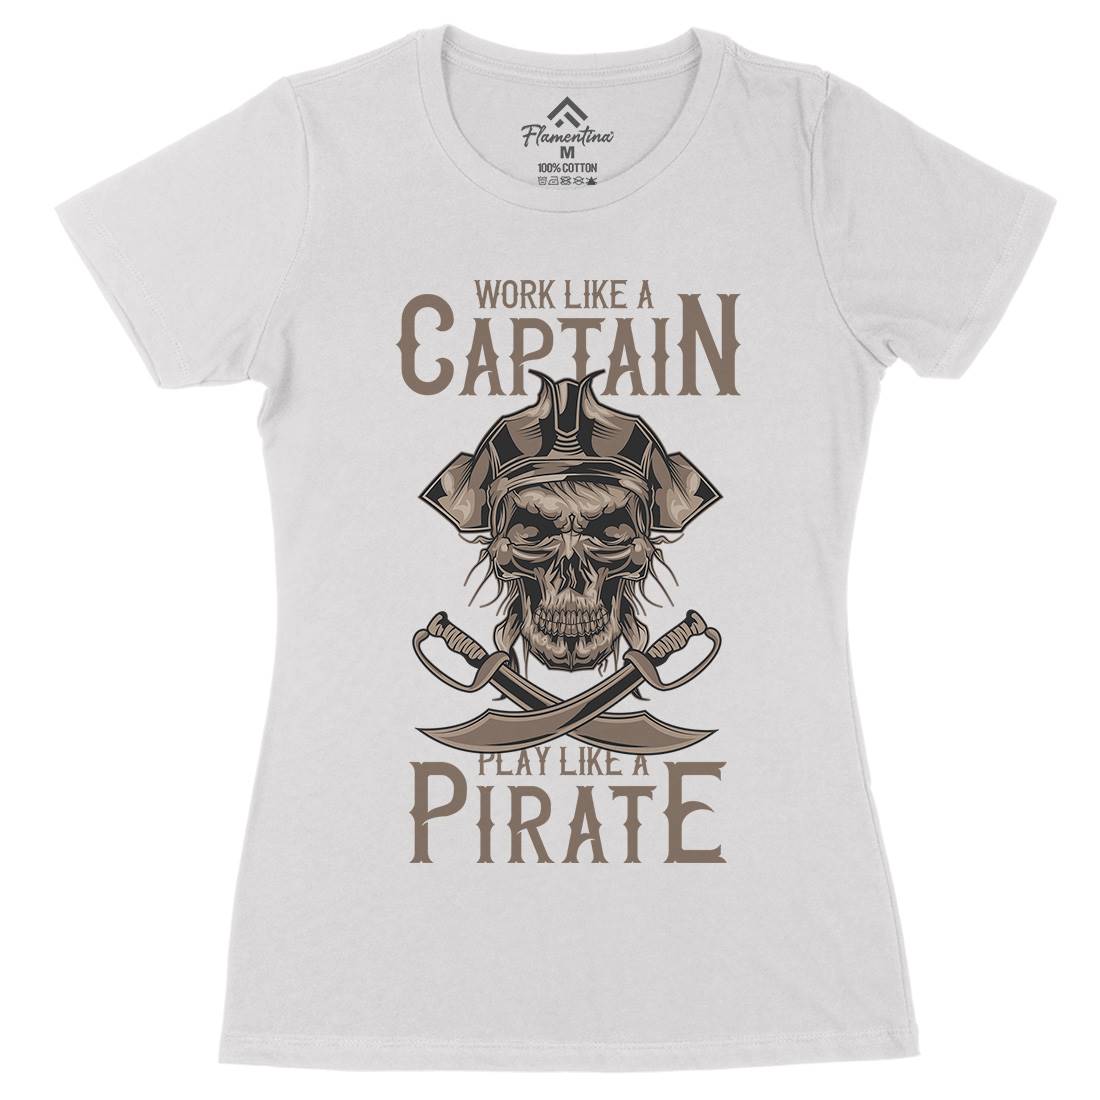 Pirate Womens Organic Crew Neck T-Shirt Navy B162